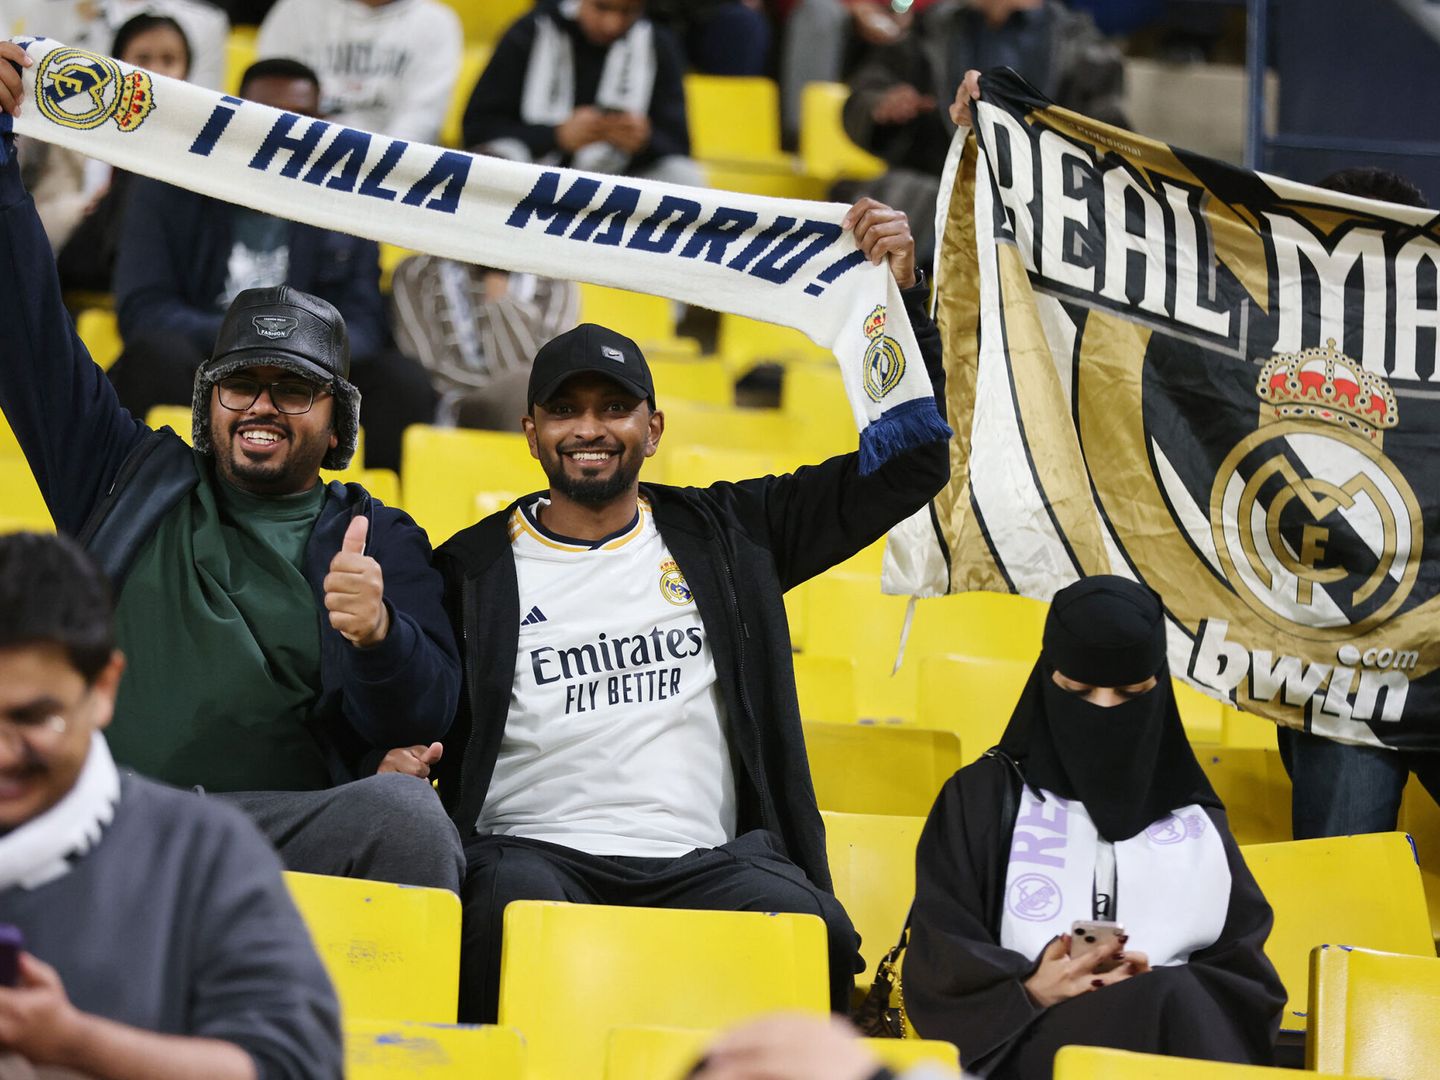 Aficionados y una aficionada del Real Madrid, en Arabia. (Reuters/Ahmed Yosri)